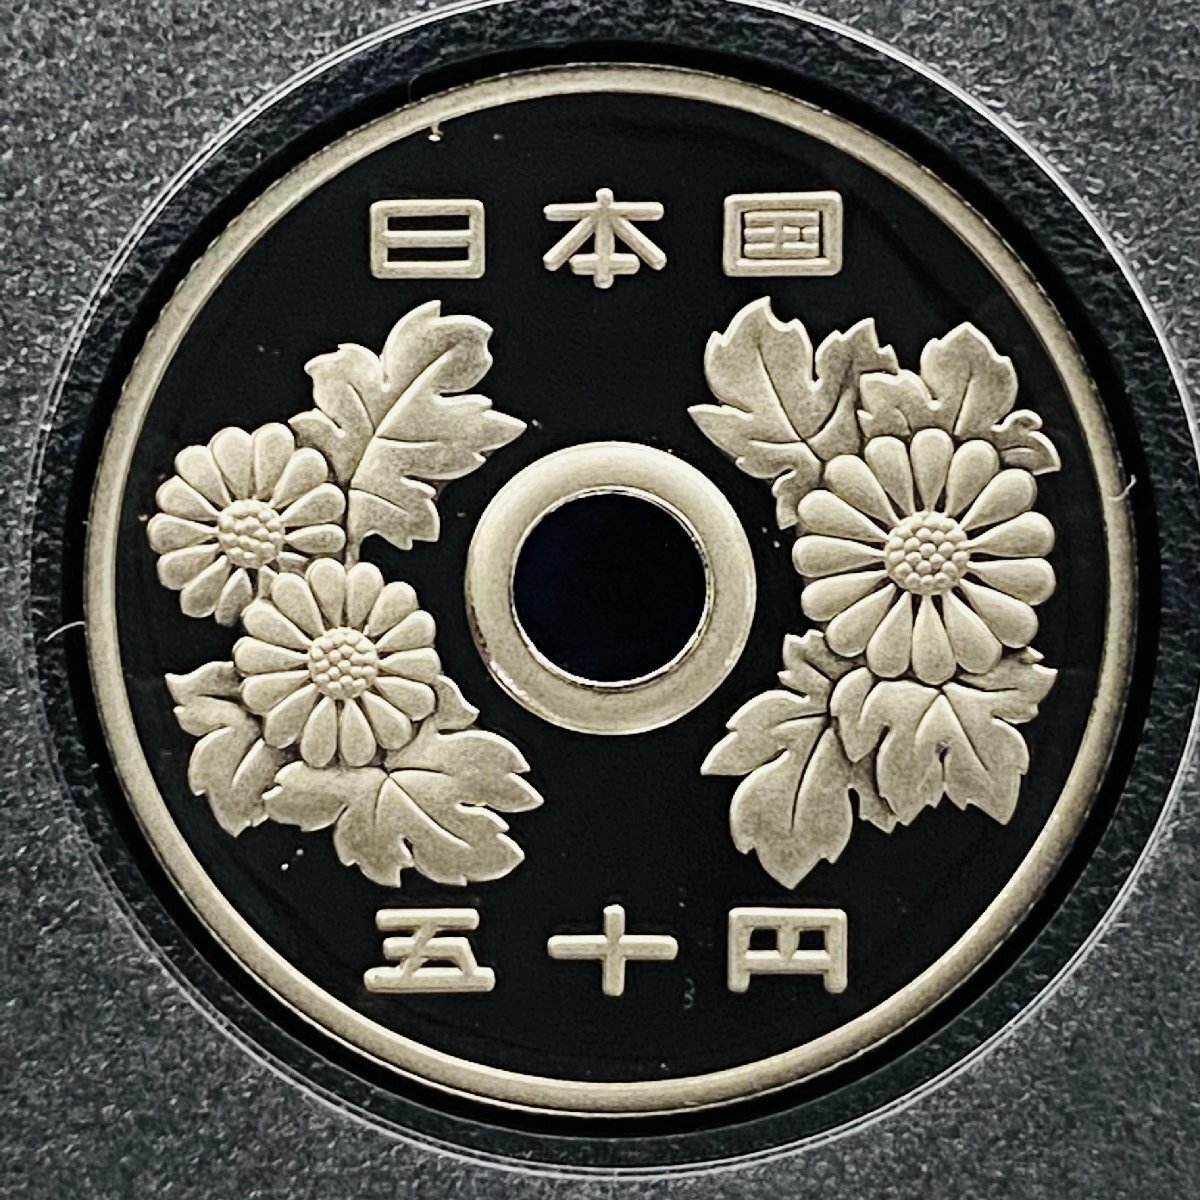 2010年 平成22年 通常プルーフ貨幣セット 額面666円 年銘板有 全揃い 記念硬貨 記念貨幣 貨幣組合 日本円 限定貨幣 コレクション P2010_画像8